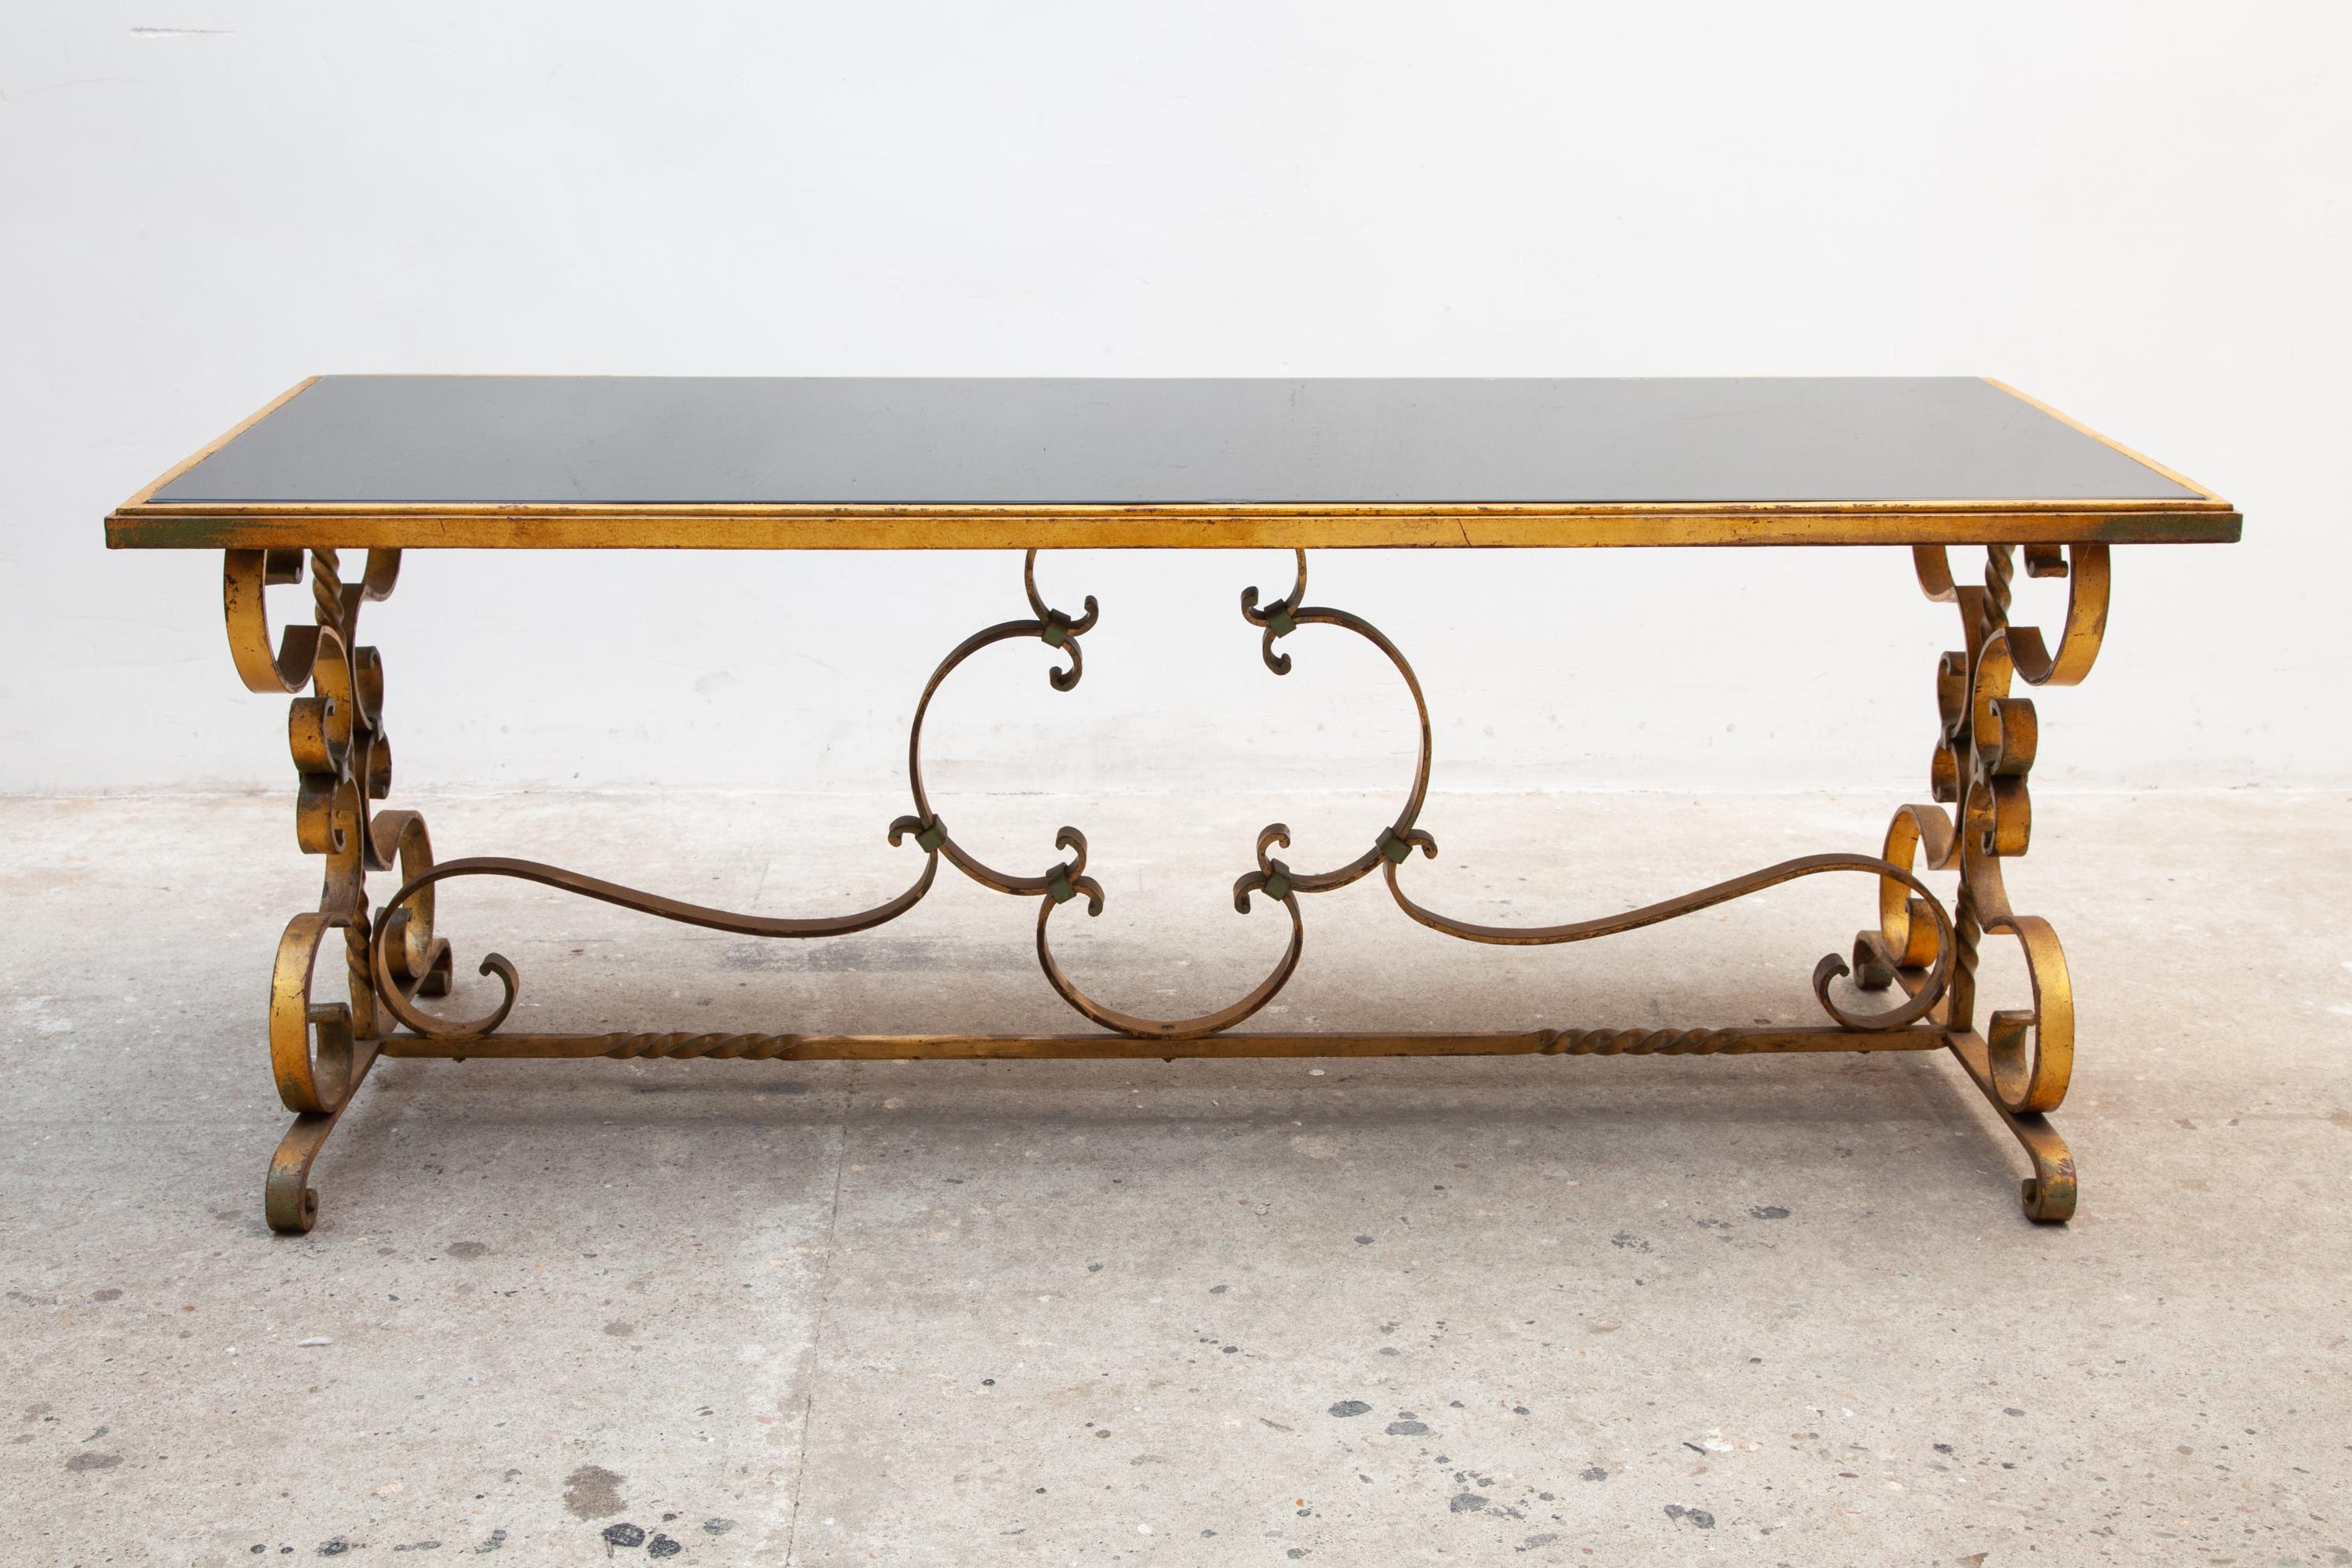 Magnifique table basse ou centrale Art Déco avec une base en fer forgé et les chaleureux détails d'origine dorés et fumés noirs du plateau en verre, design détaillé d'agréables courbes, très bel exemple d'Art Déco français des années 30

 